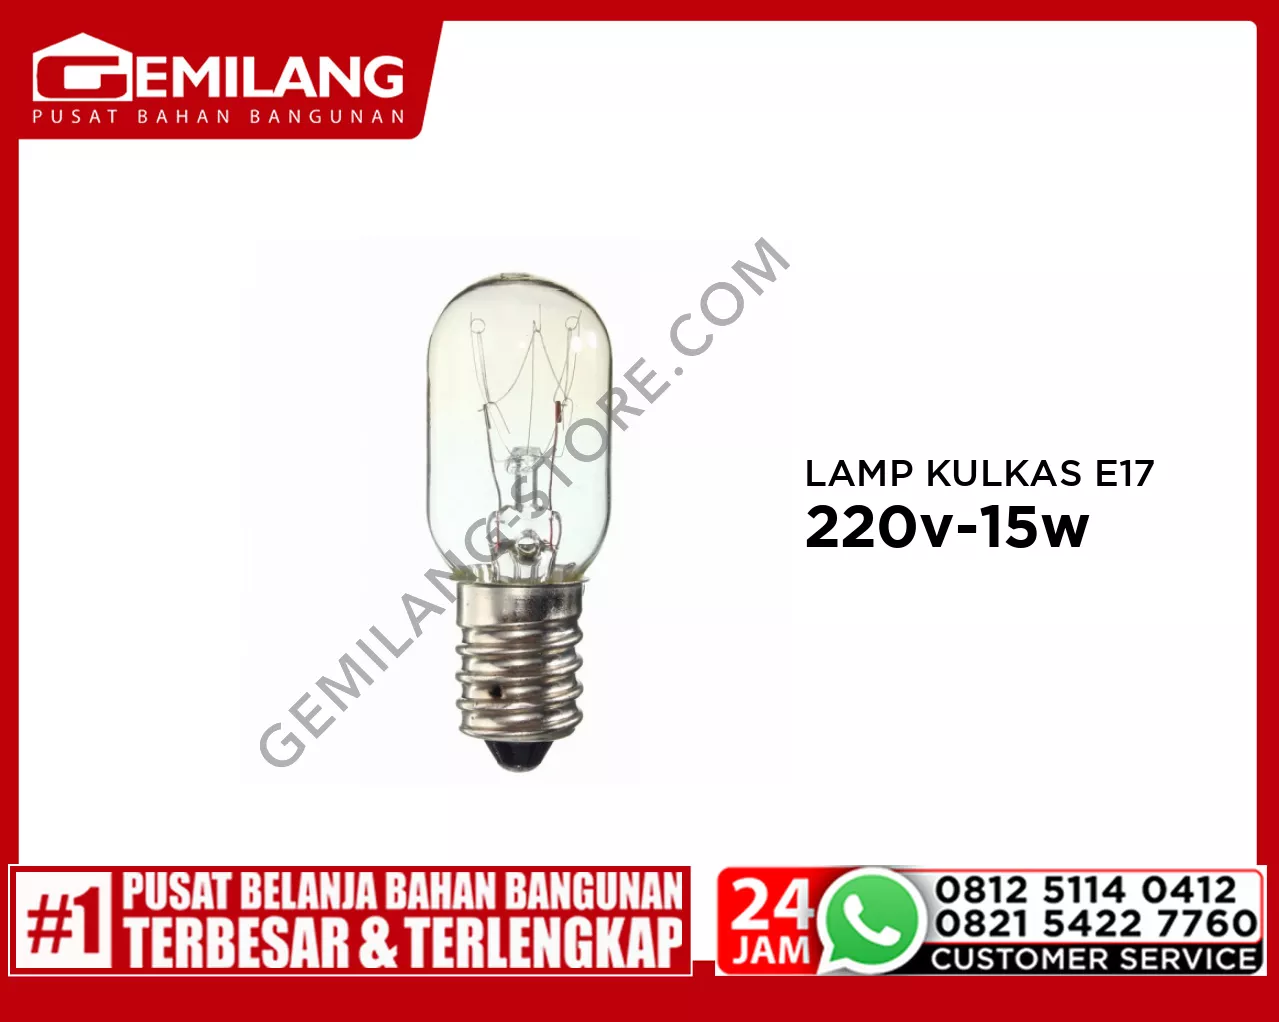 LAMP KULKAS E17 220v-15w